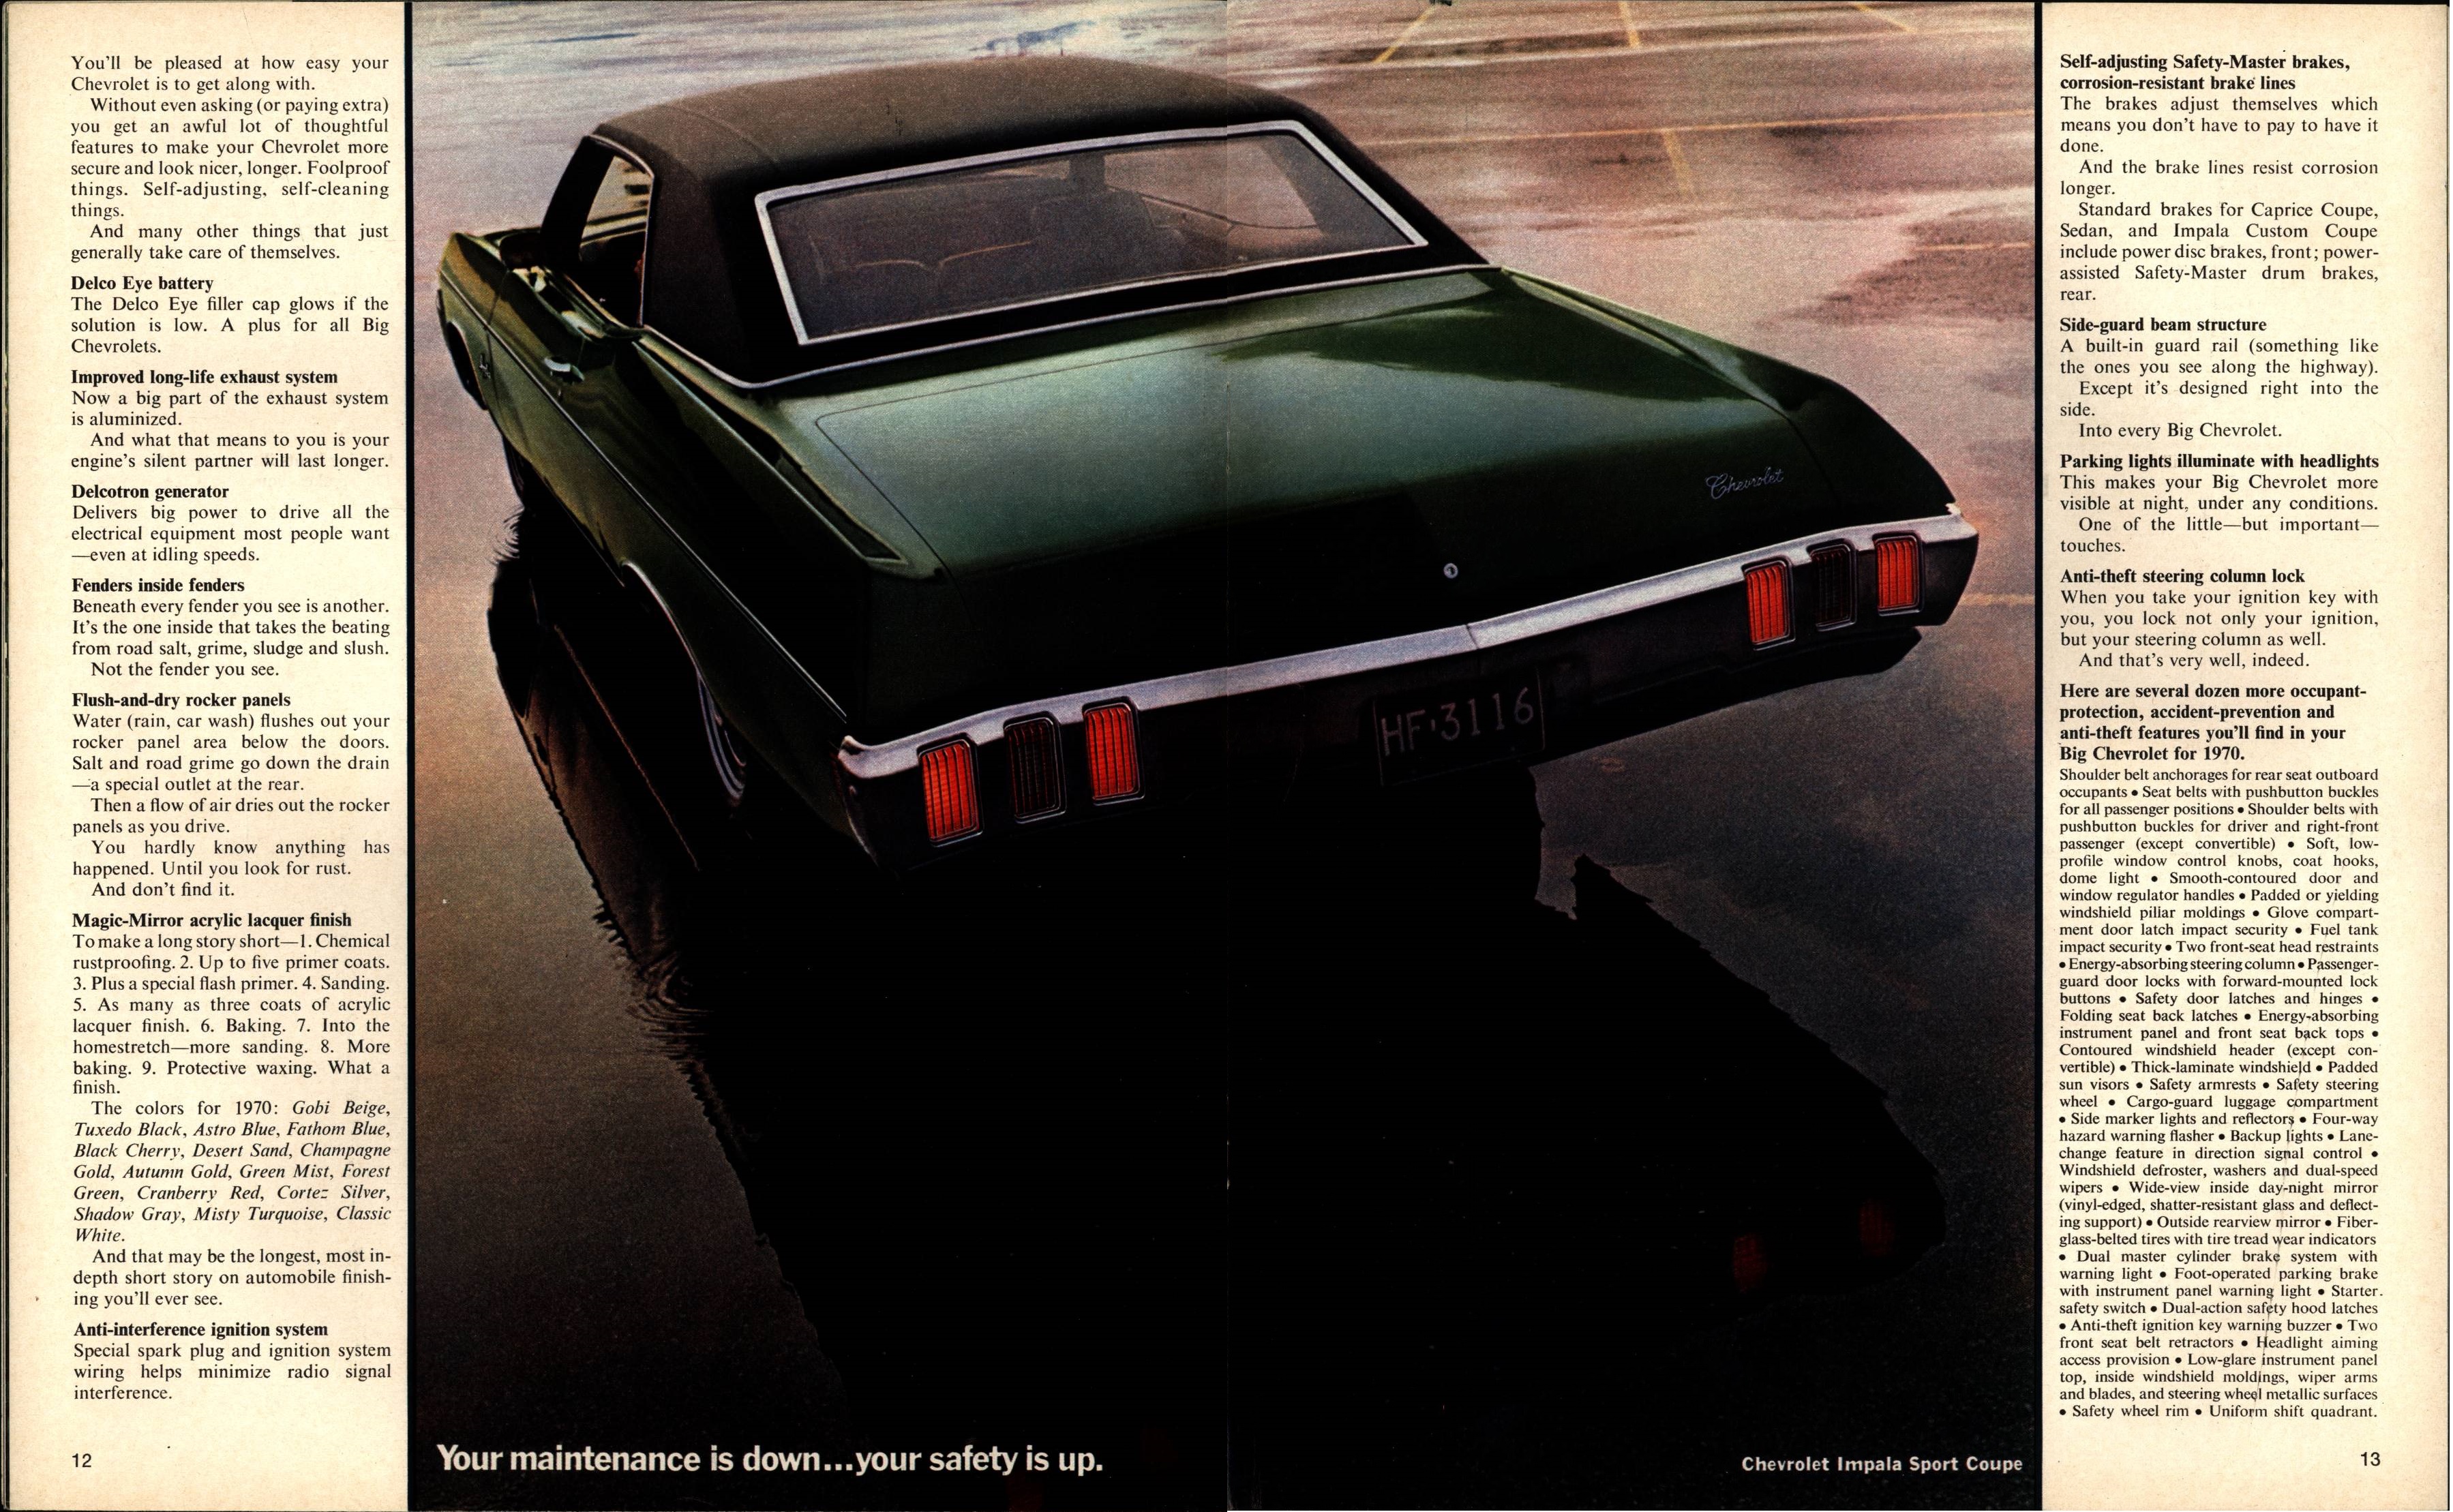 1970 Chevrolet Full Size Brochure 12-13